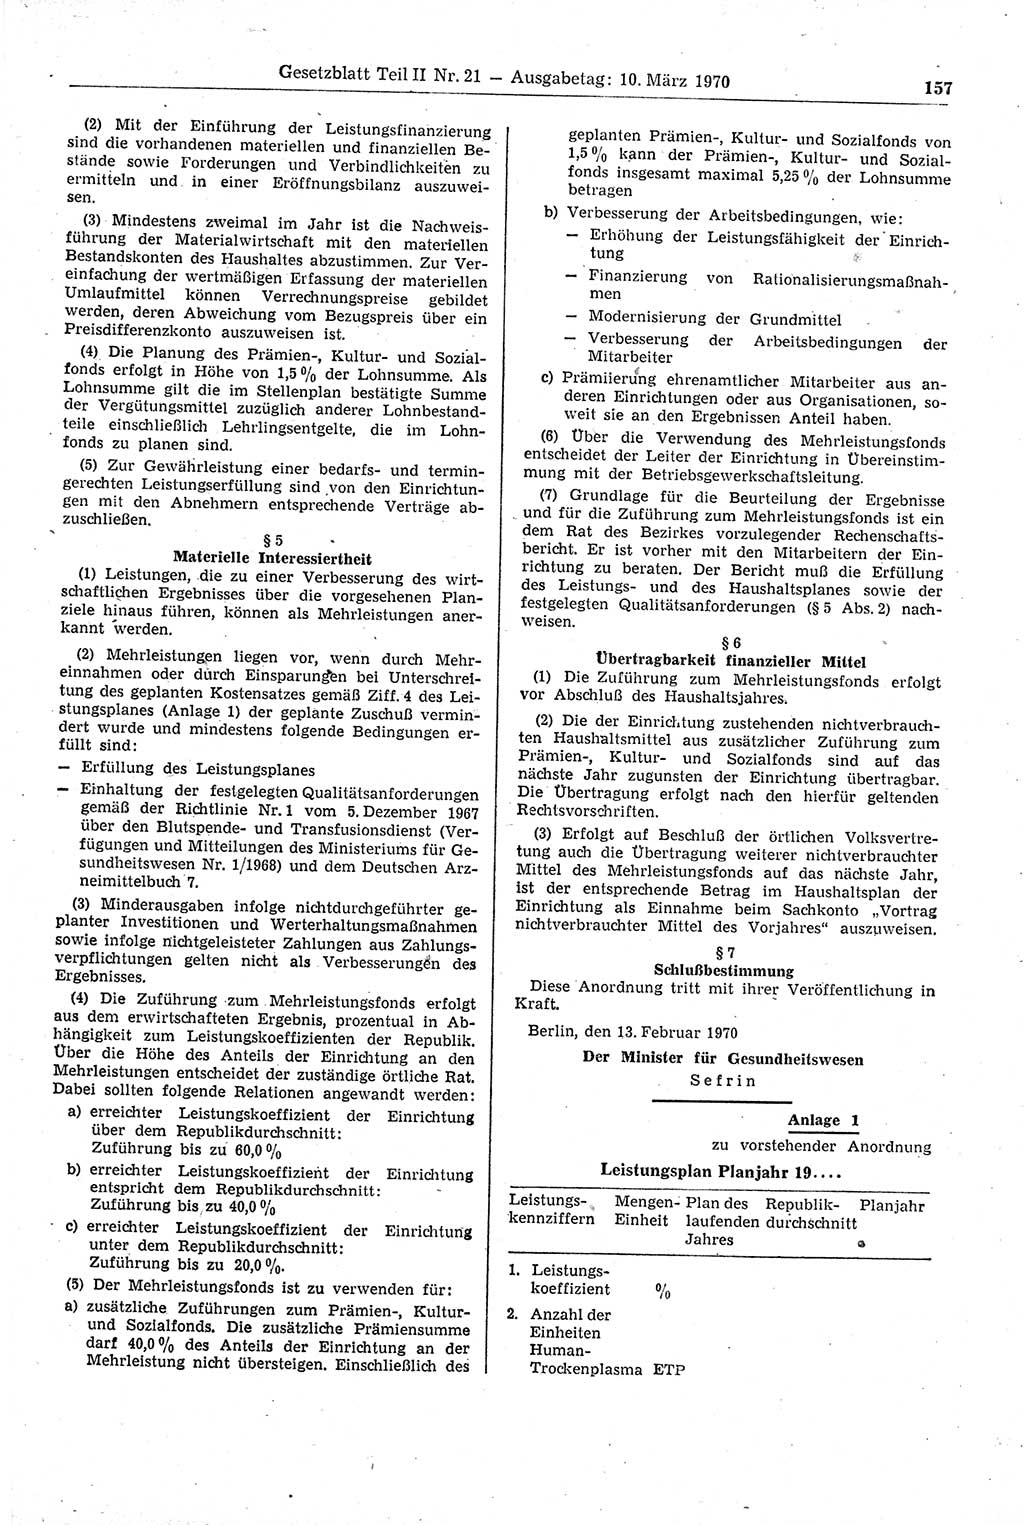 Gesetzblatt (GBl.) der Deutschen Demokratischen Republik (DDR) Teil ⅠⅠ 1970, Seite 157 (GBl. DDR ⅠⅠ 1970, S. 157)